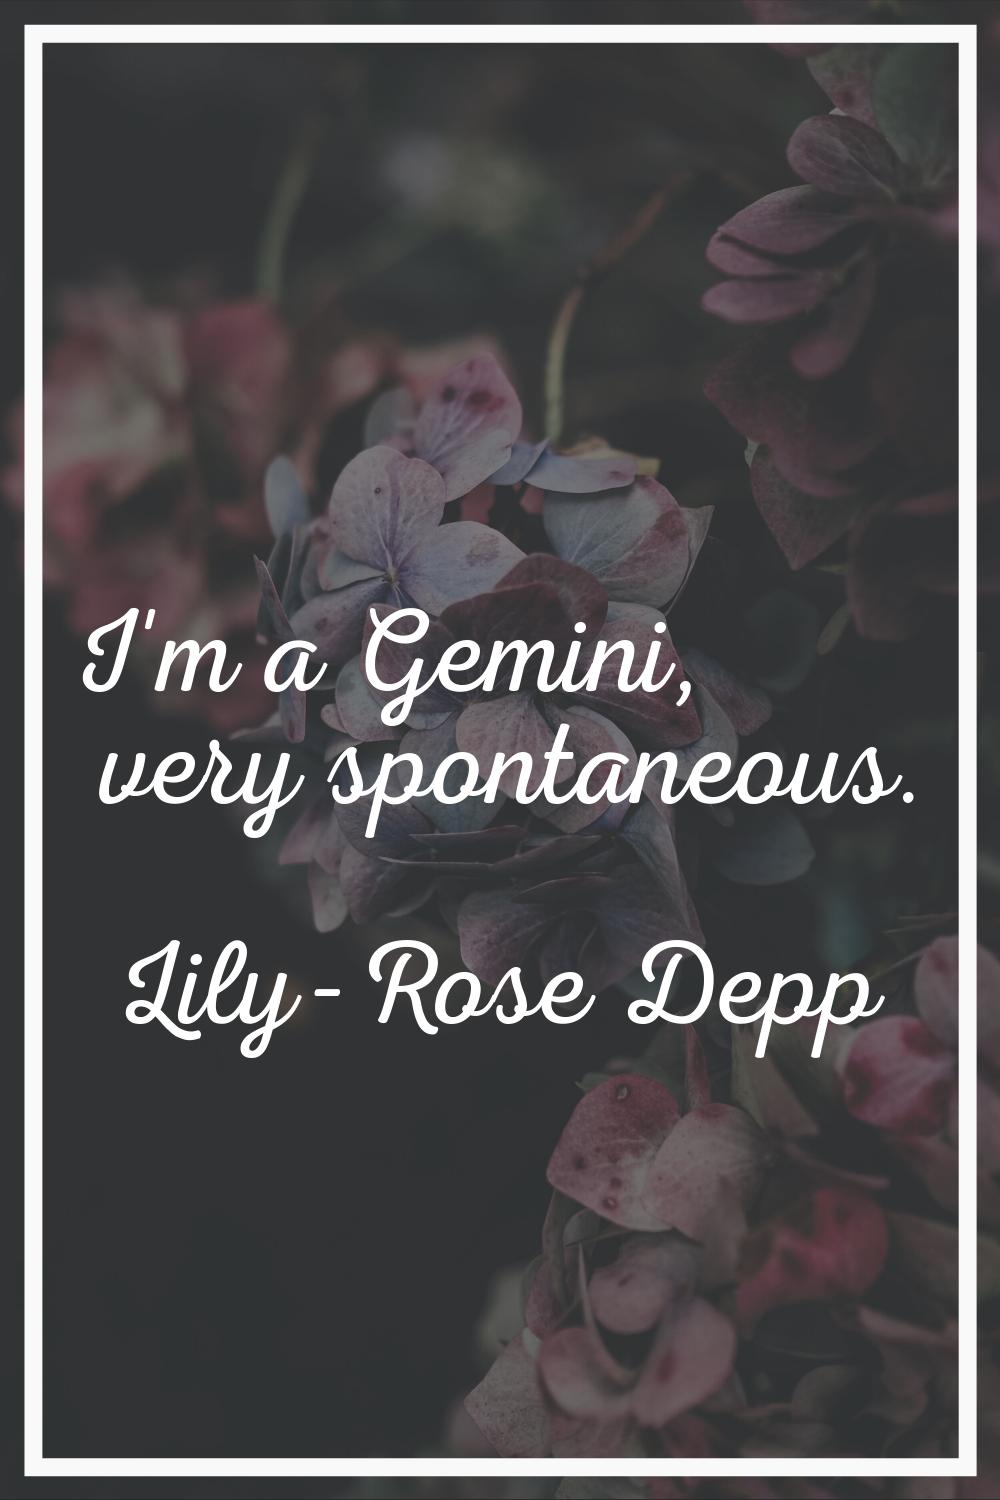 I'm a Gemini, very spontaneous.